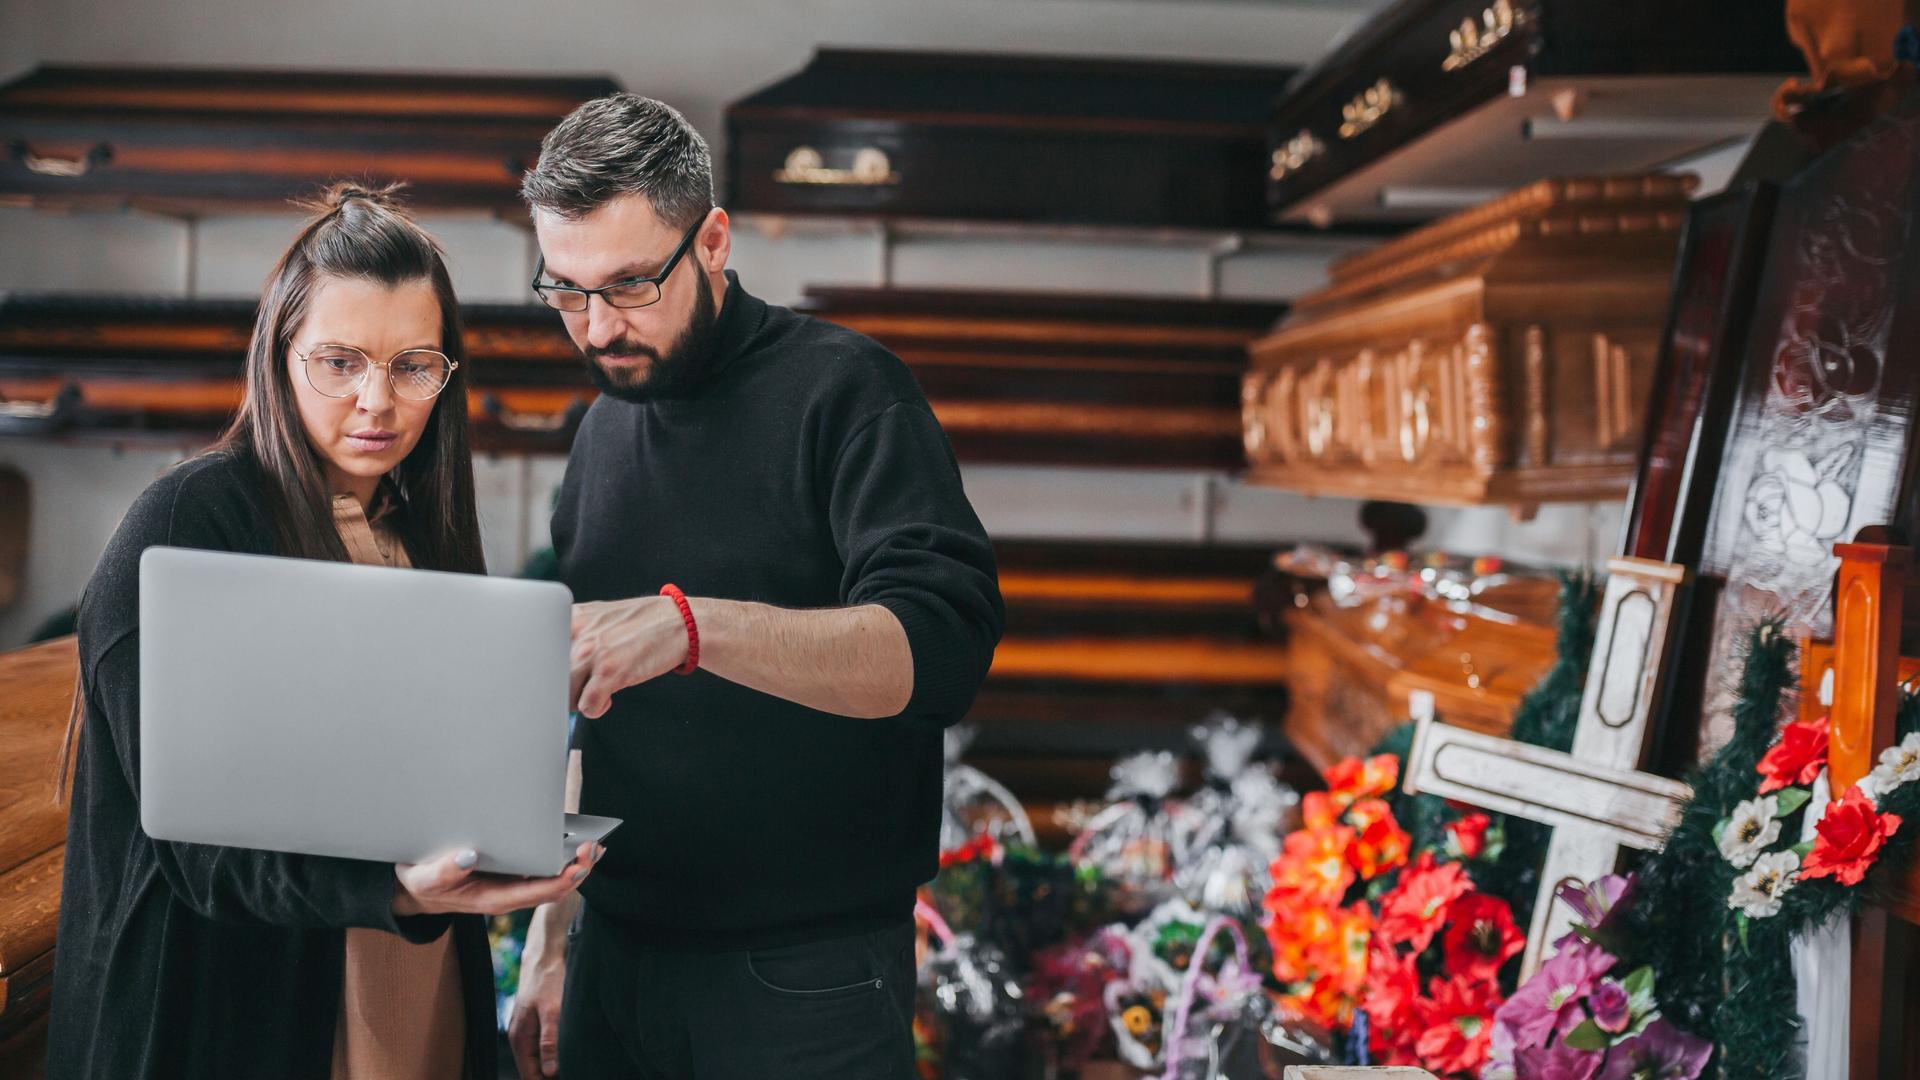 Eine Frau und ein Mann stehen mit einem Laptop vor einem Regal mit Särgen und Bestattungsartikeln.